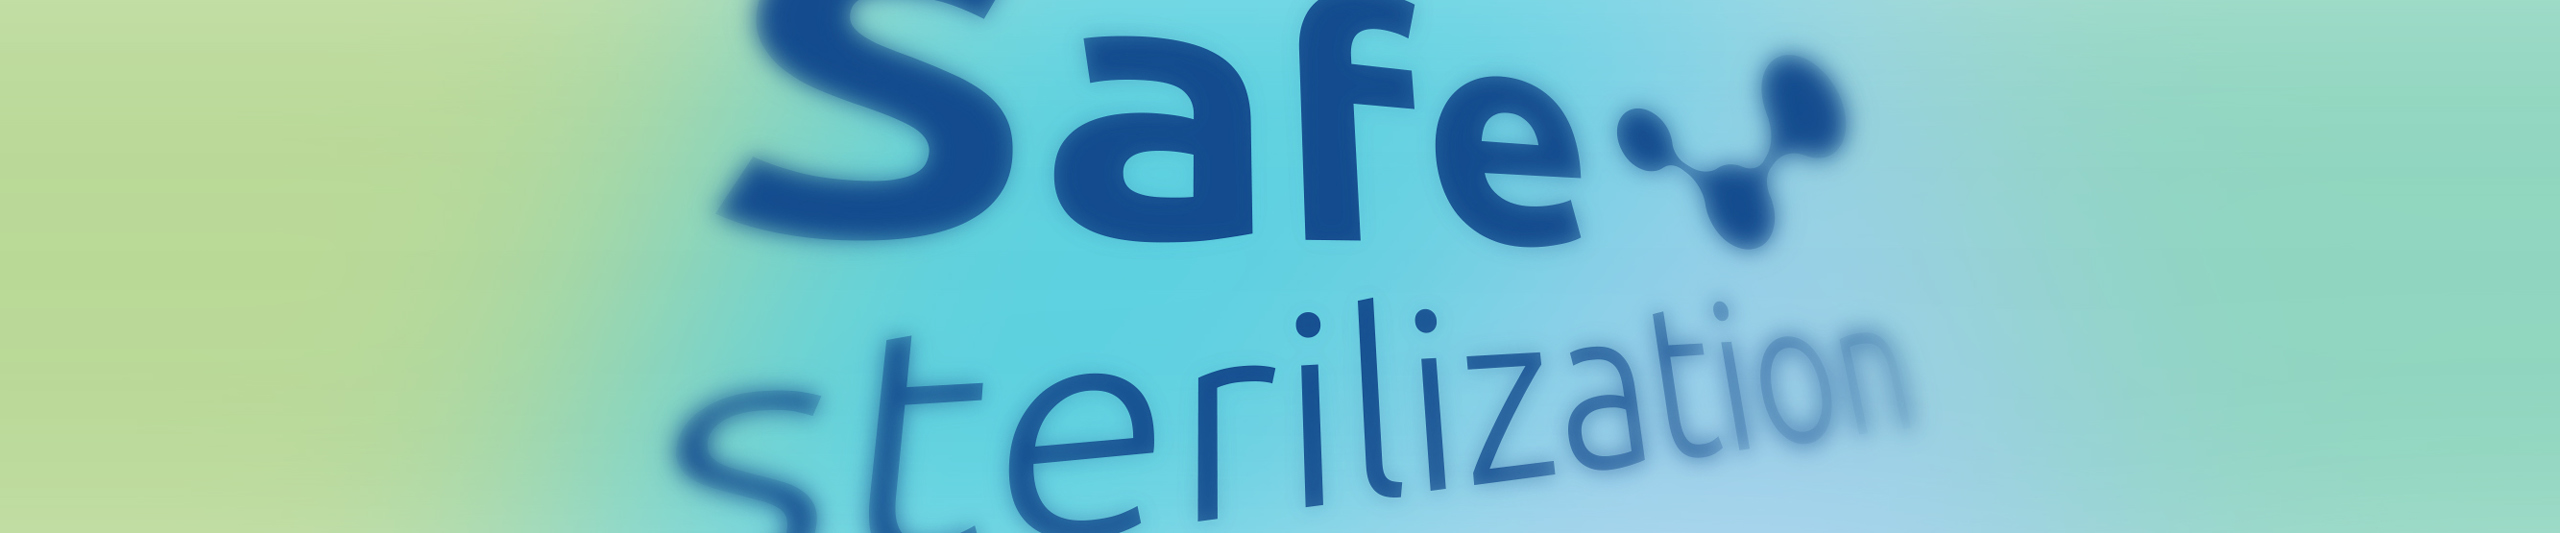 Safe Sterilization logo 5